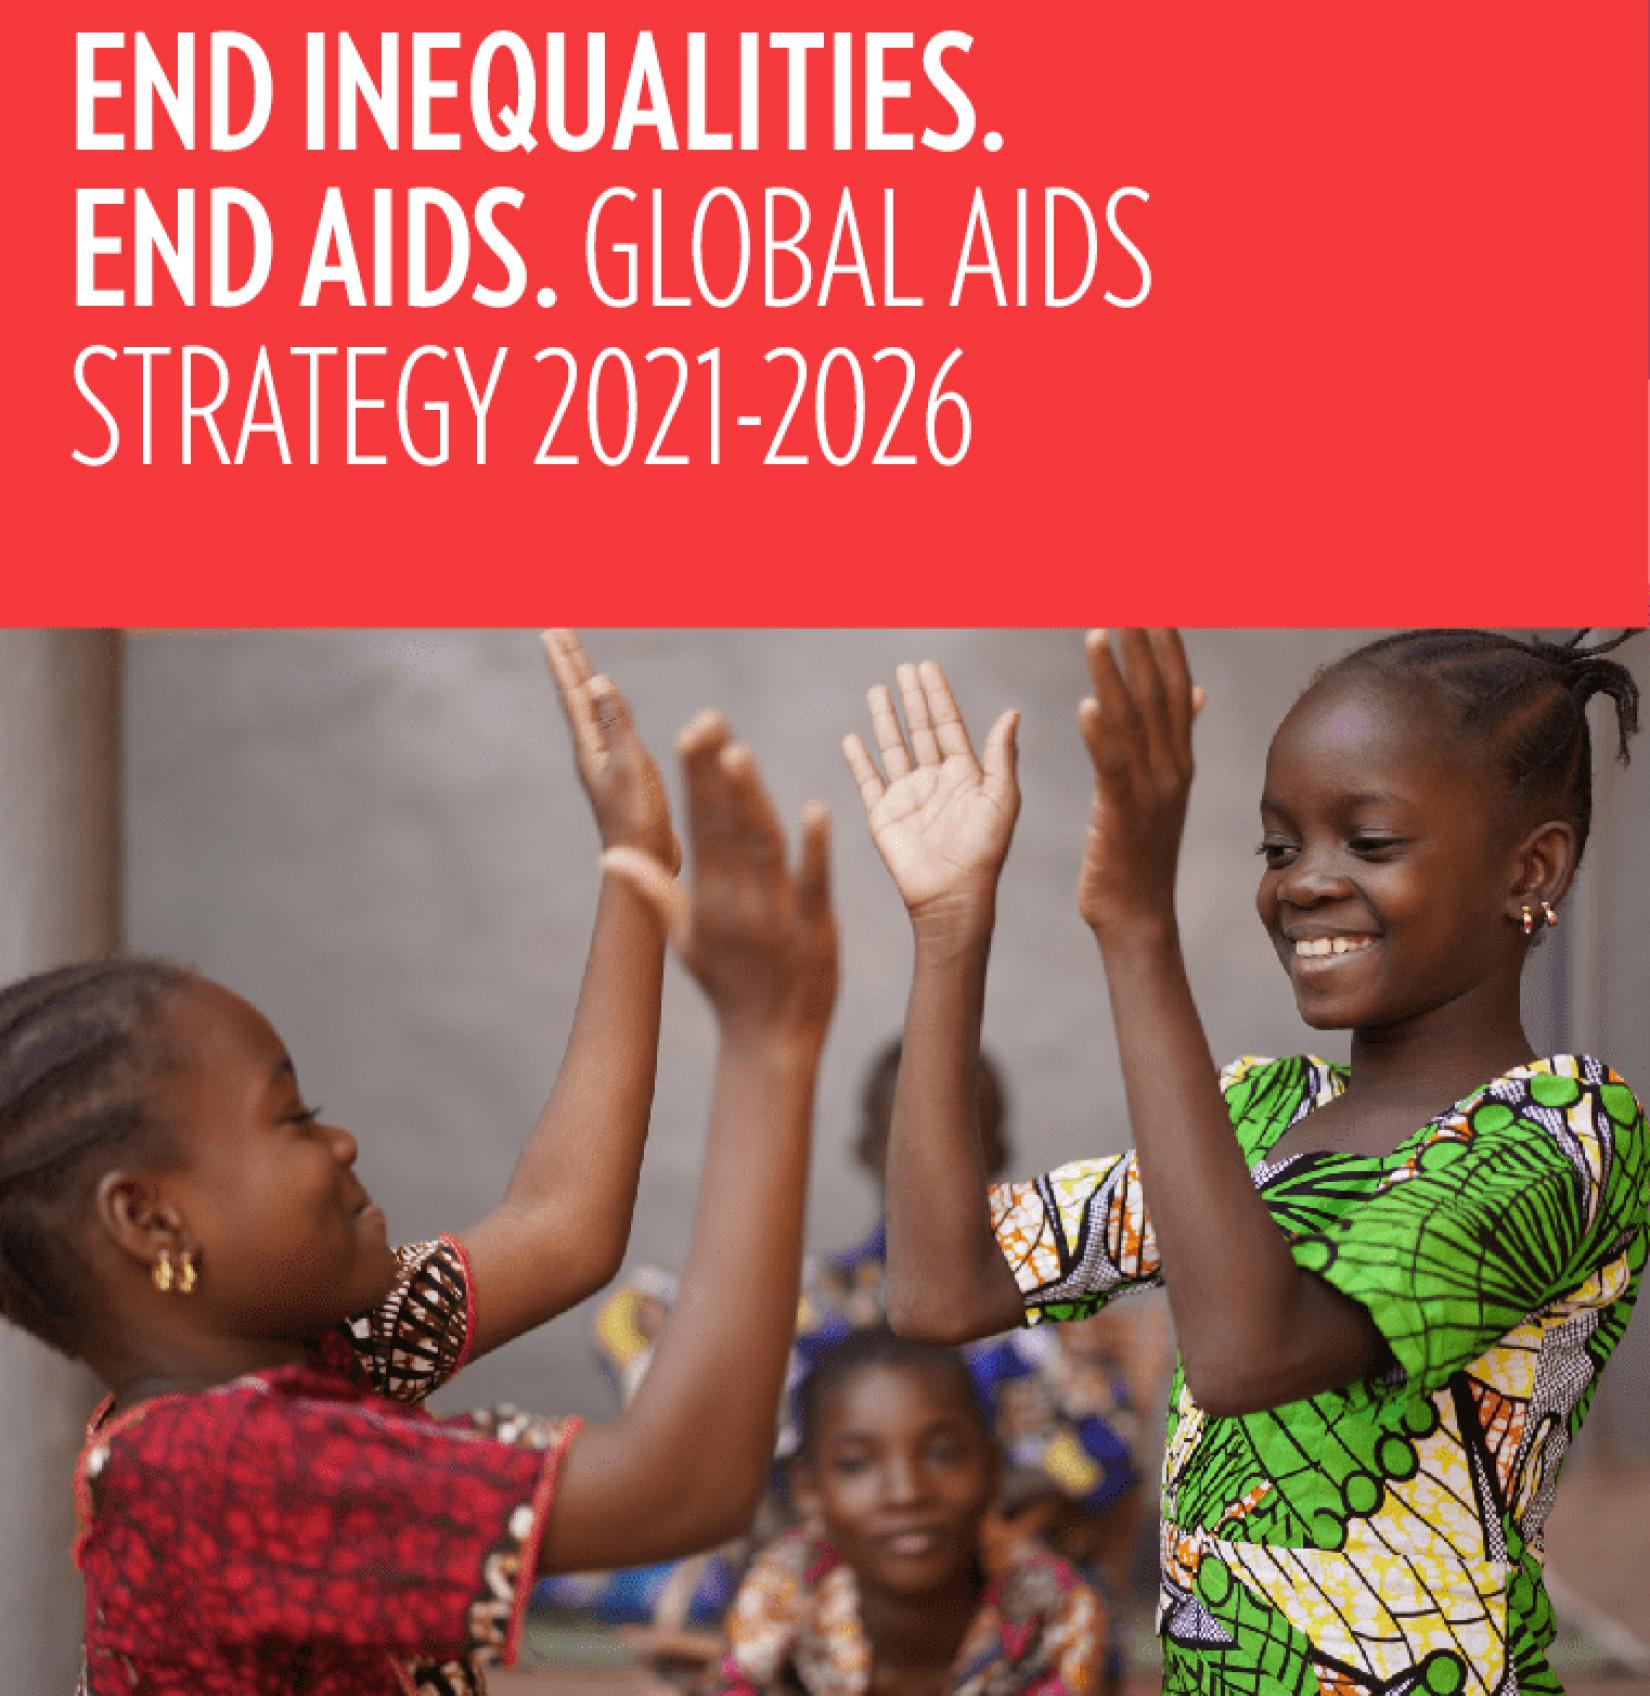 "Ликвидировать неравенство, покончить со СПИДом" -тема новой Глобальной стратегии по СПИДу